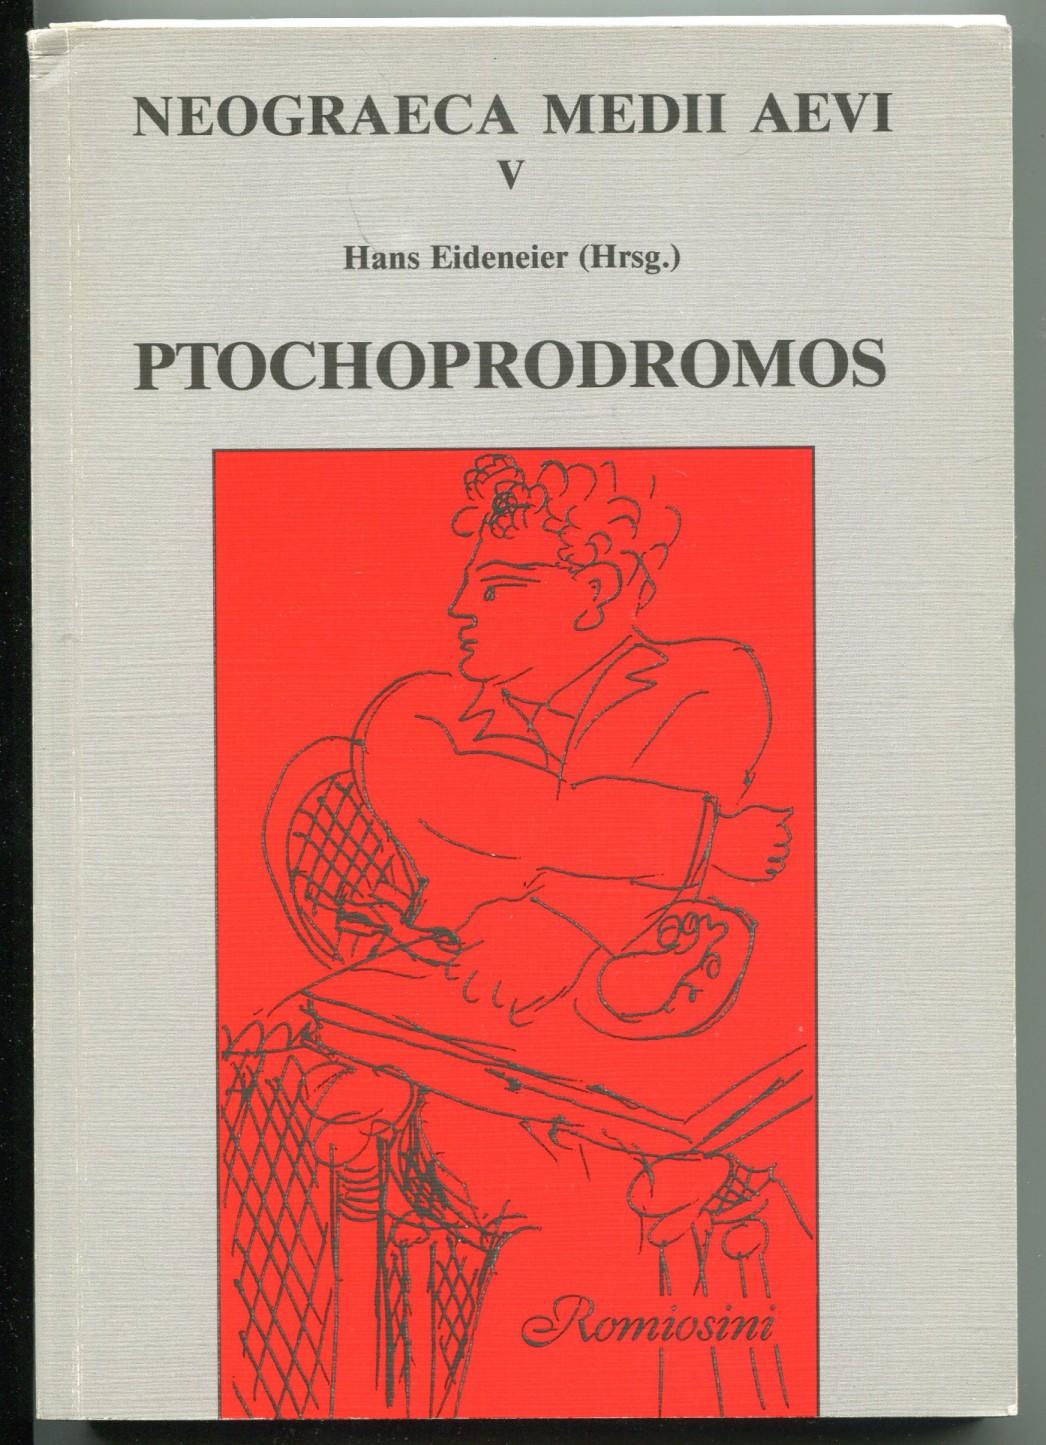 Ptochoprodromos. Einführung, kritische Ausgabe, deutsche Übersetzung, Glossar [= Neograeca Medii Aevi; V] - Eideneier, Hans (ed.)